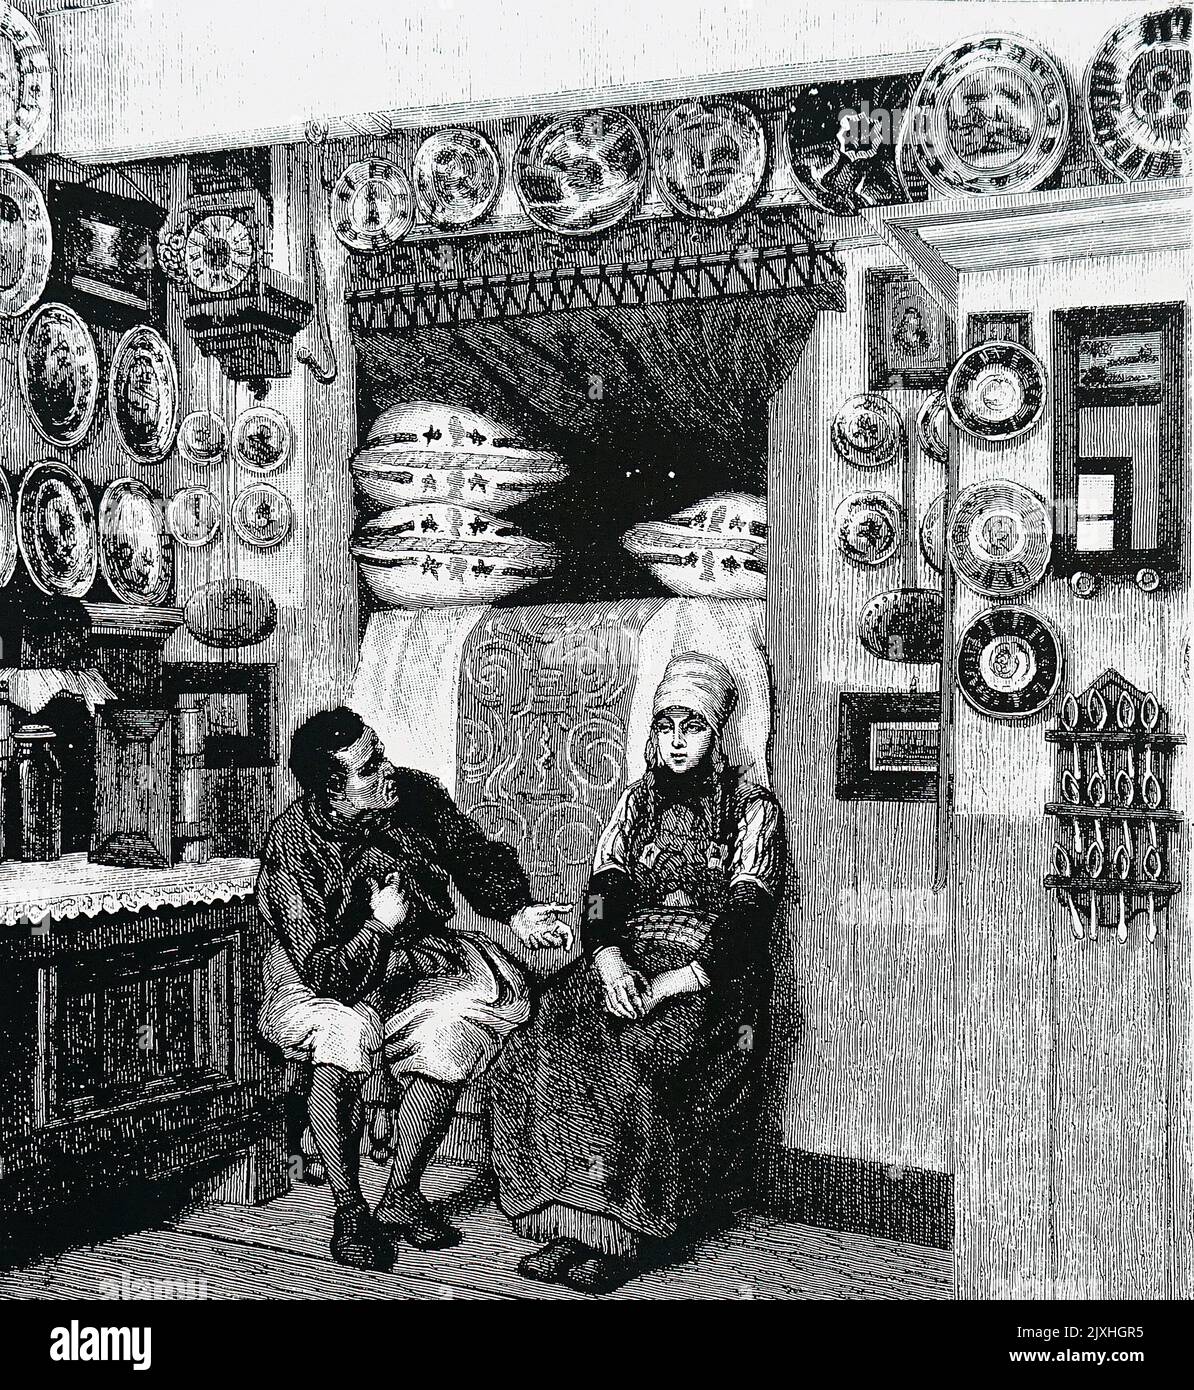 Illustration représentant l'intérieur d'une maison sur l'île hollandaise de Maaken, montrant un lit armoire derrière les deux figures. Daté du 19th siècle Banque D'Images